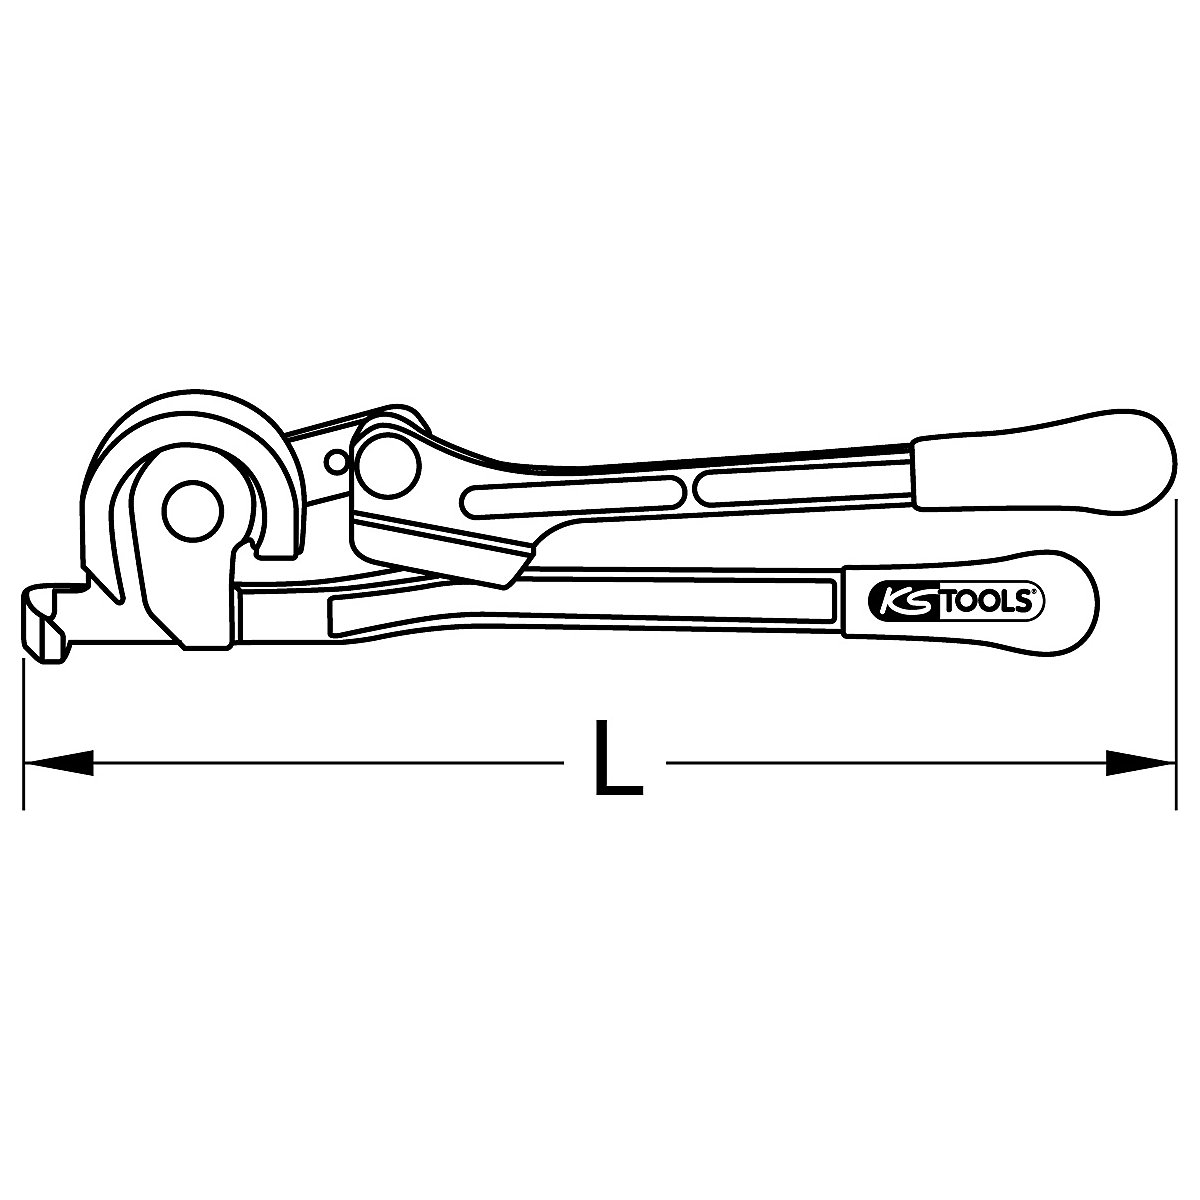 Majhno orodje za upogibanje 3 v 1 – KS Tools (Slika izdelka 5)-4